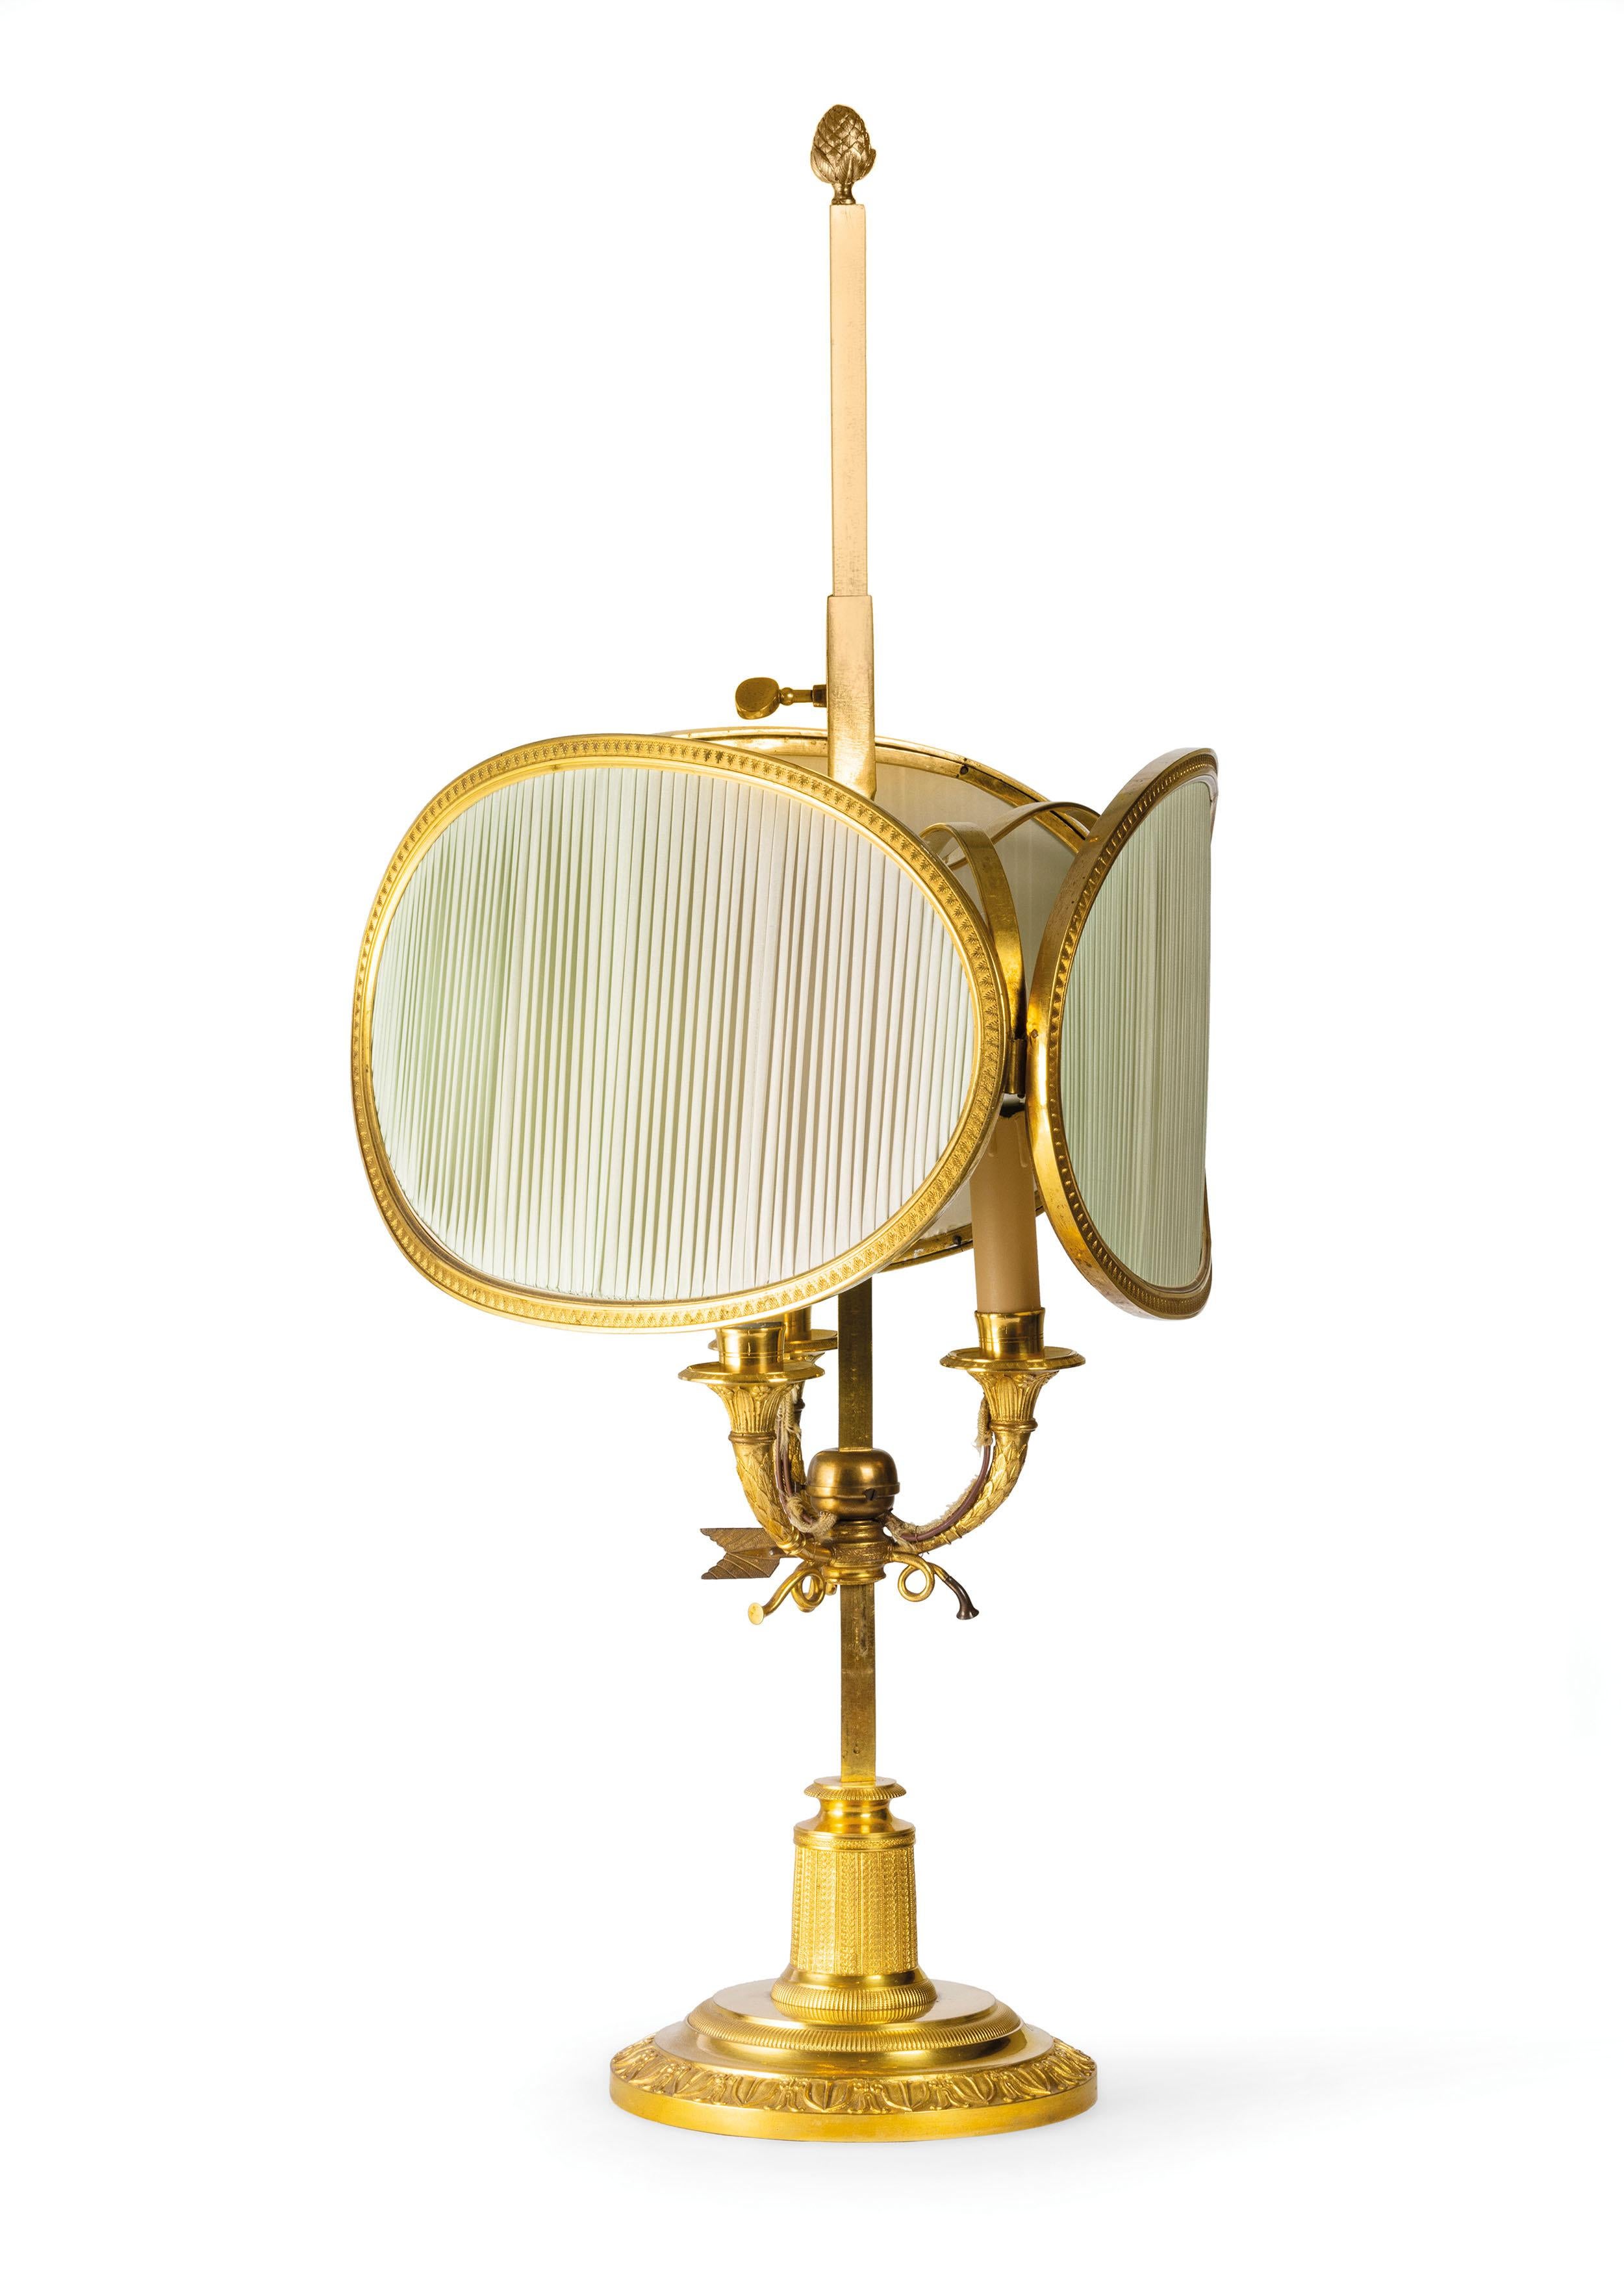 Lampe Buillotte en bronze doré, France, 20e siècle 
Cette élégante lampe de table modèle buillotte a été fabriquée en France vers le début du XXe siècle, de goût classique avec des éléments décoratifs inspirés des styles Louis XVI et Empire. La